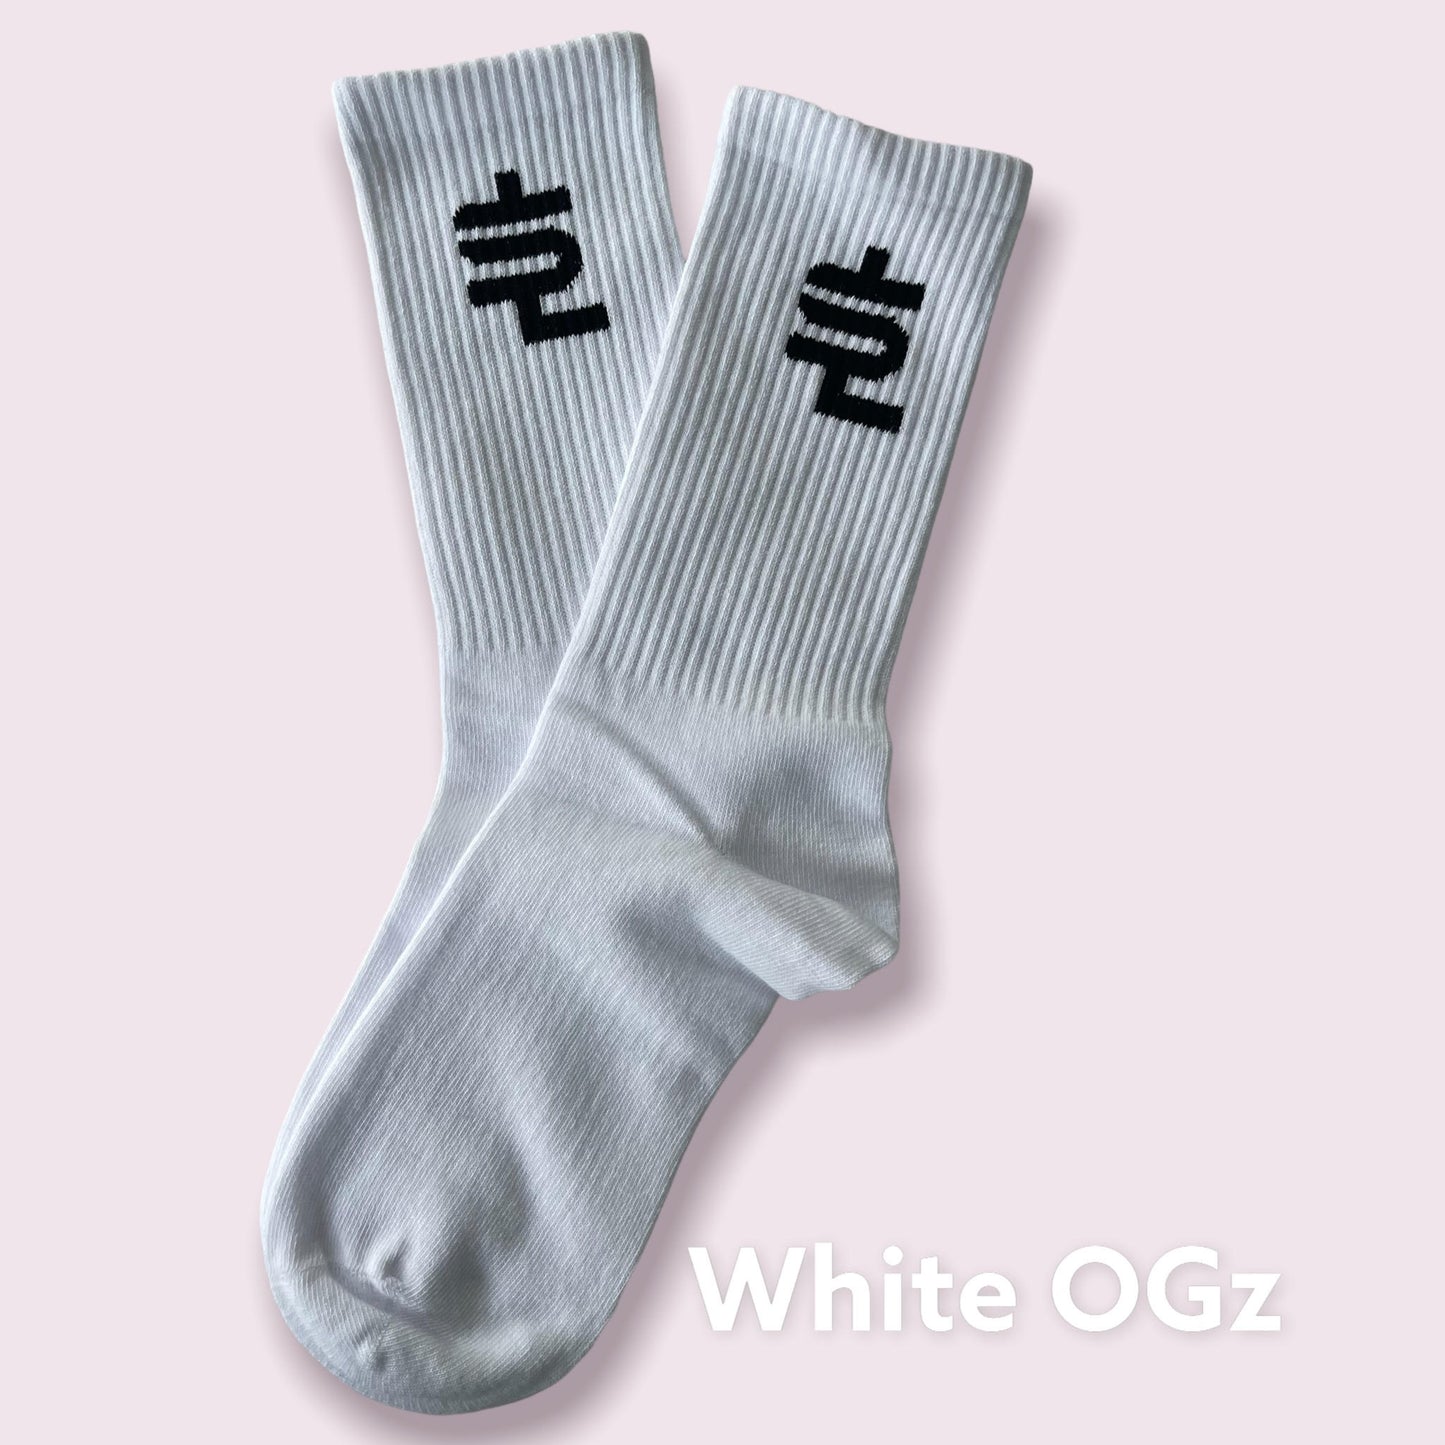 SL Socks OGz